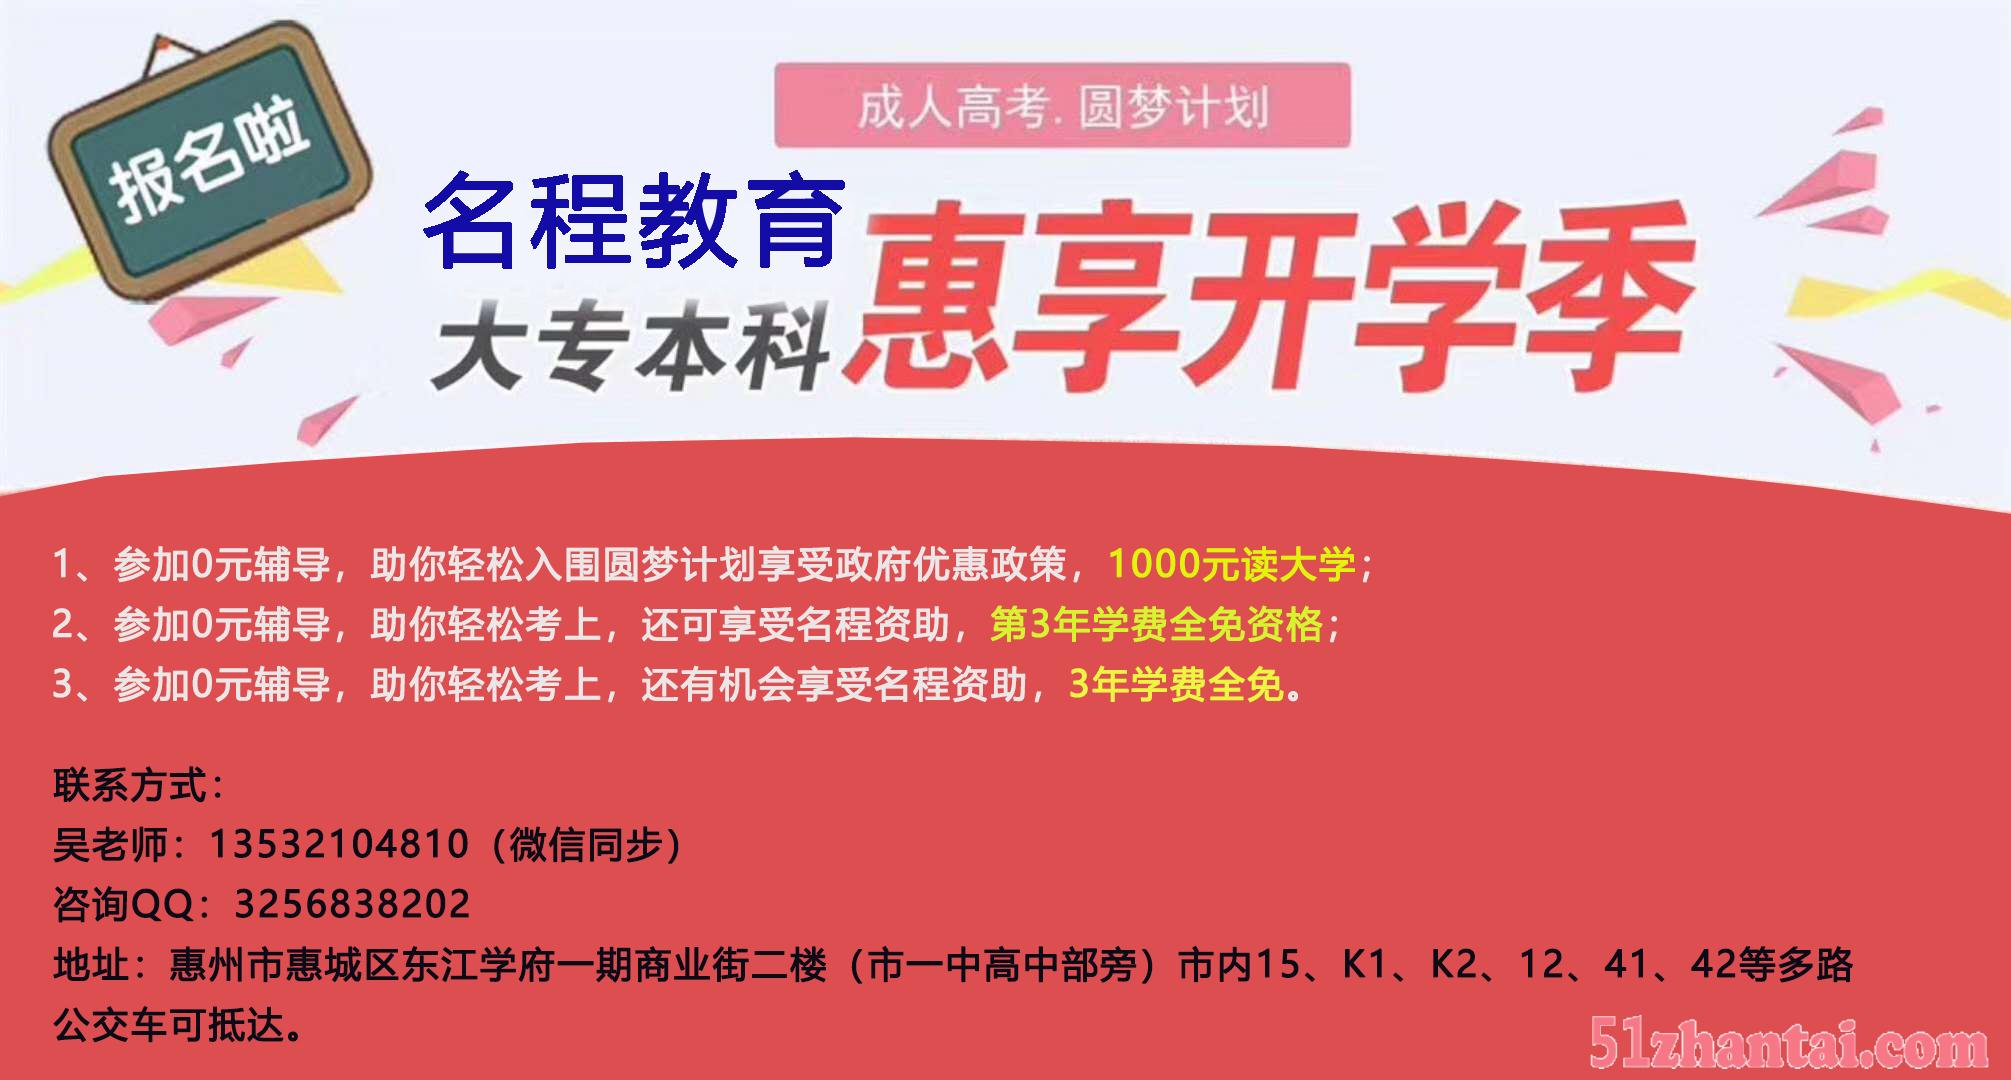 2018年惠州圆梦计划600上元大学-图1